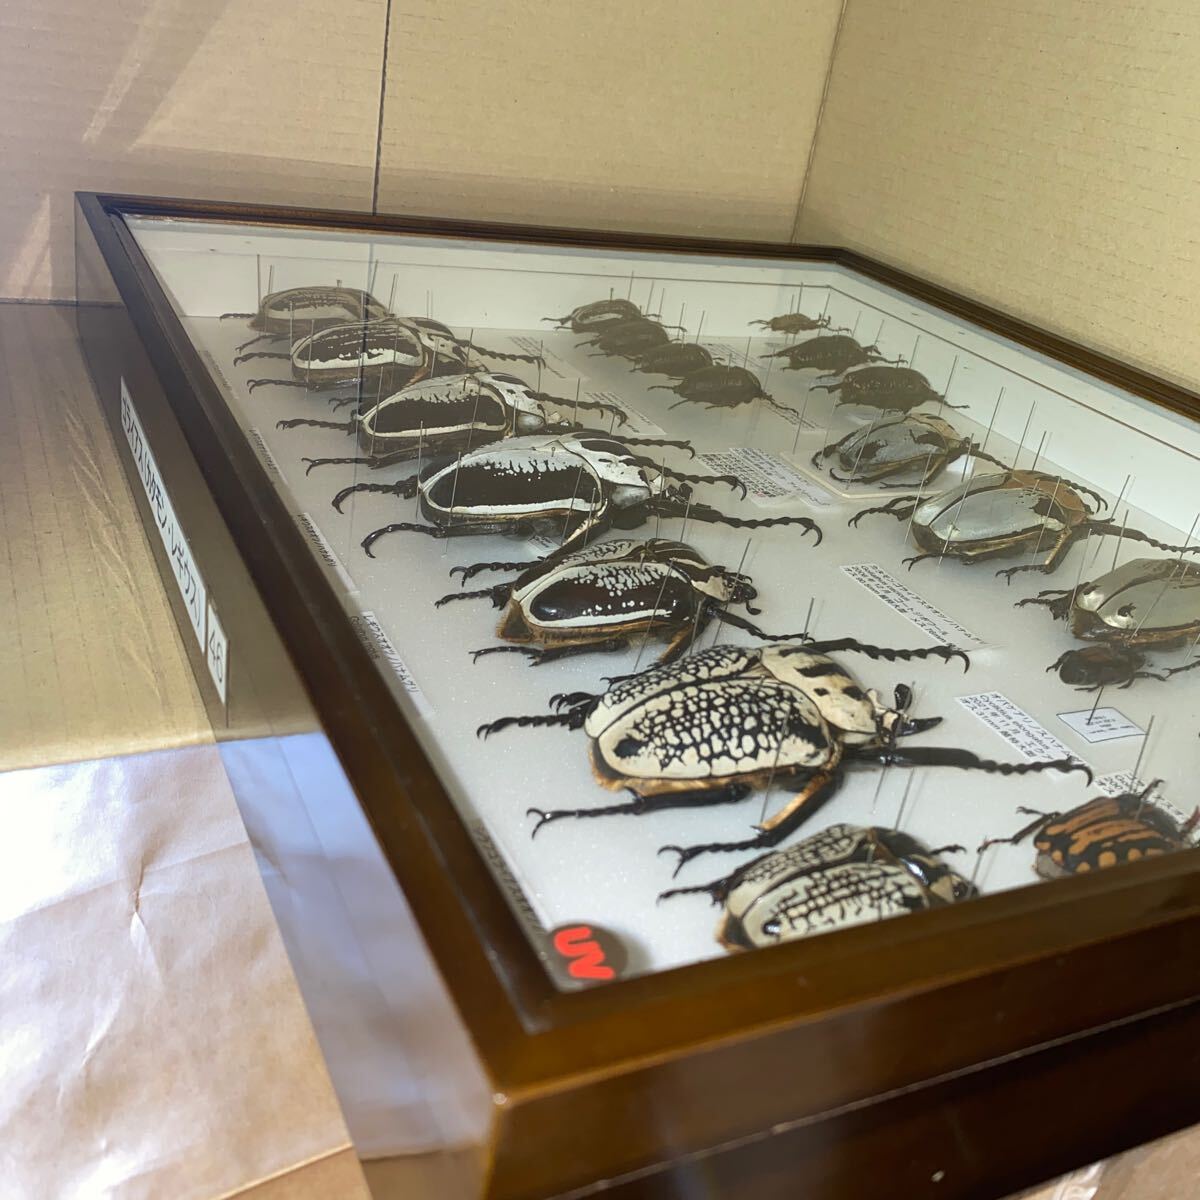  ゴライアス レギウス アトラス オオツノハナムグリ 標本 ドイツ箱入り 昆虫 甲虫 標本 の画像9